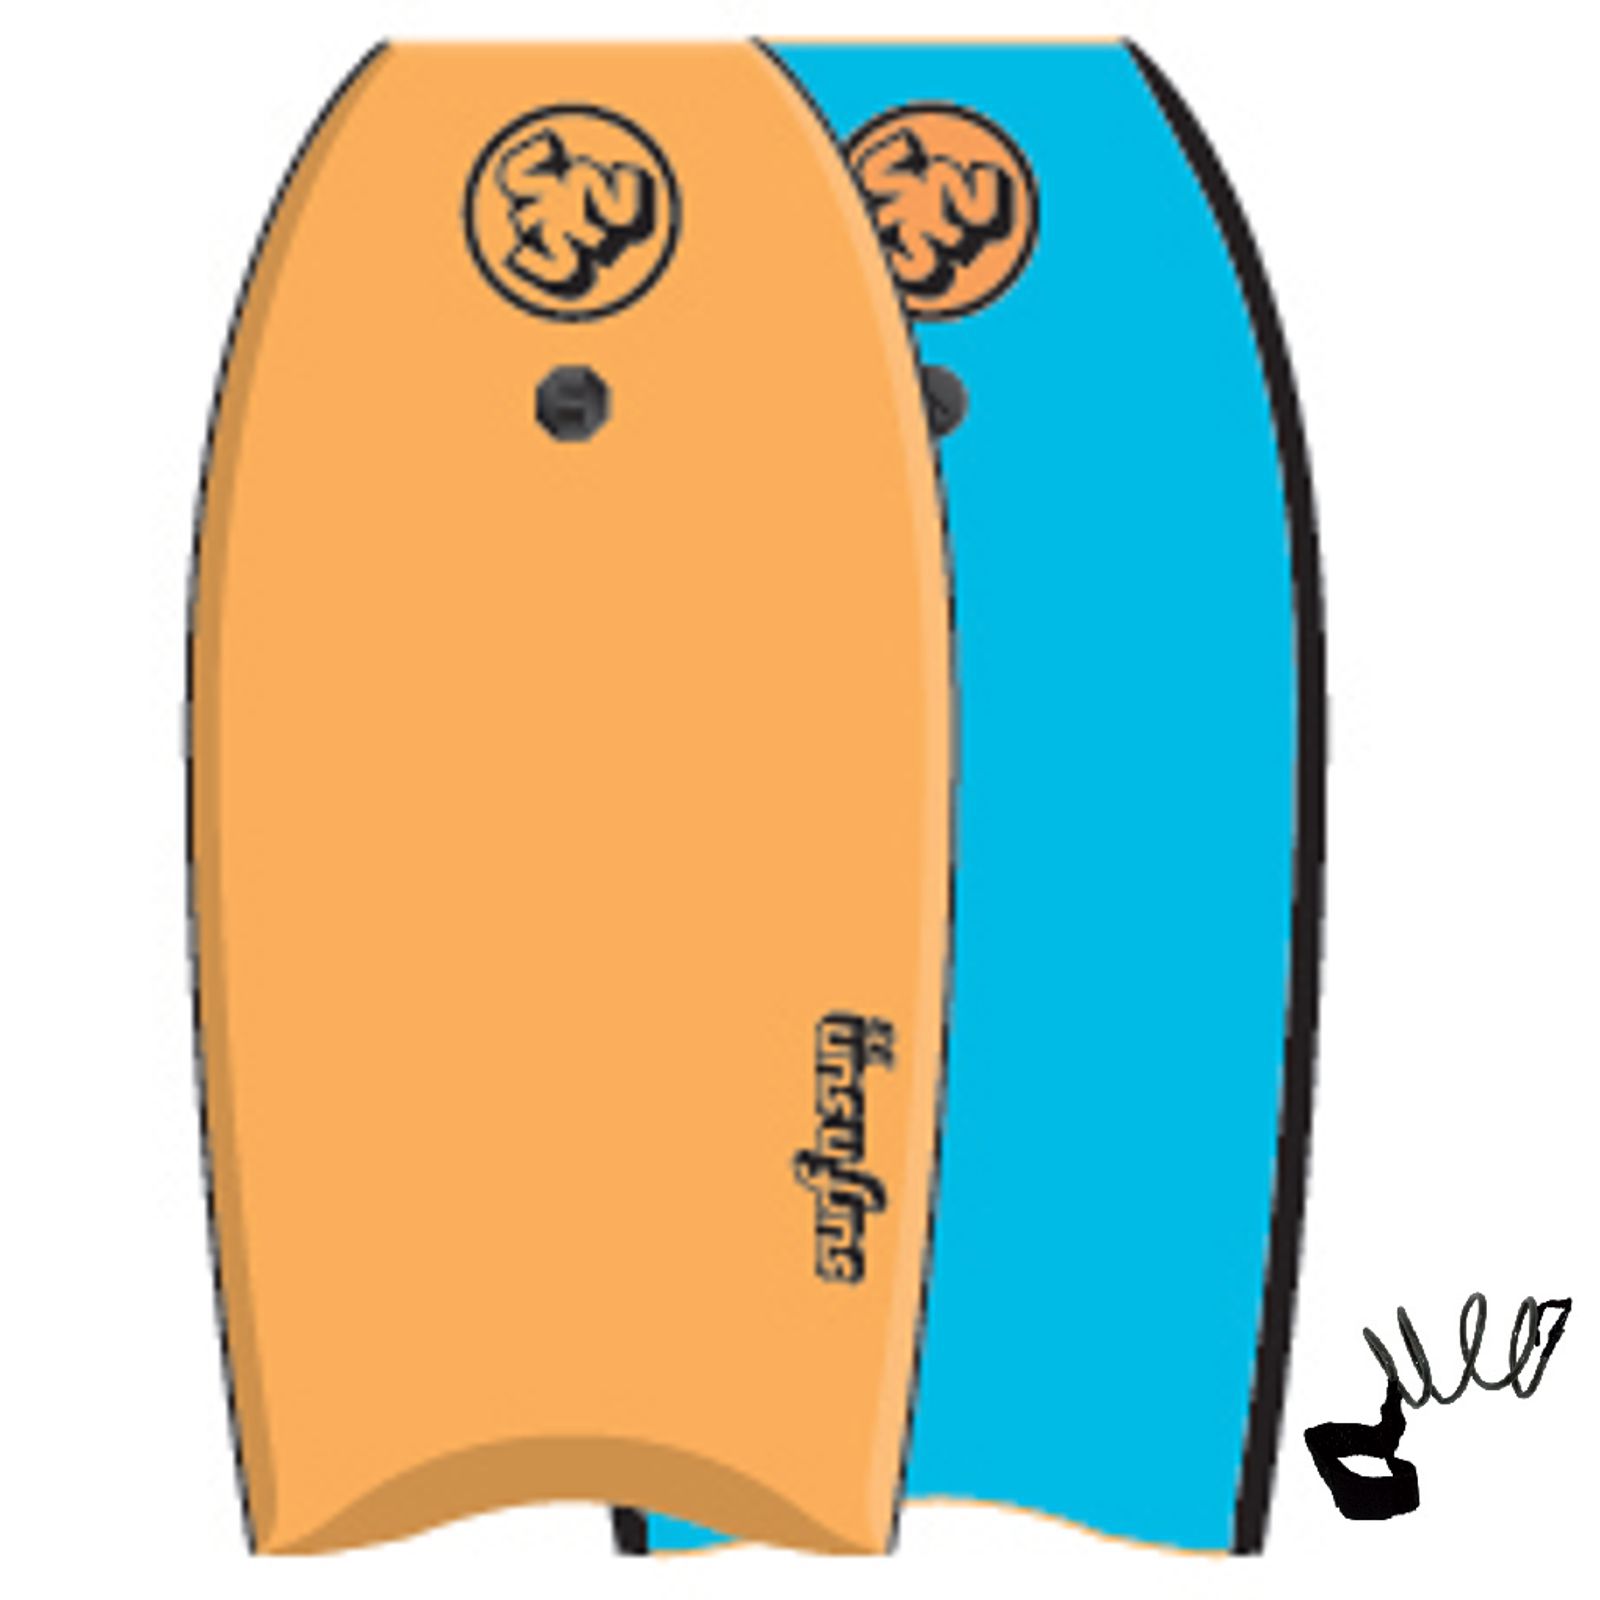 Surfnsun Bodyboard Hinanui 41 Yellow-Black Surf Board 